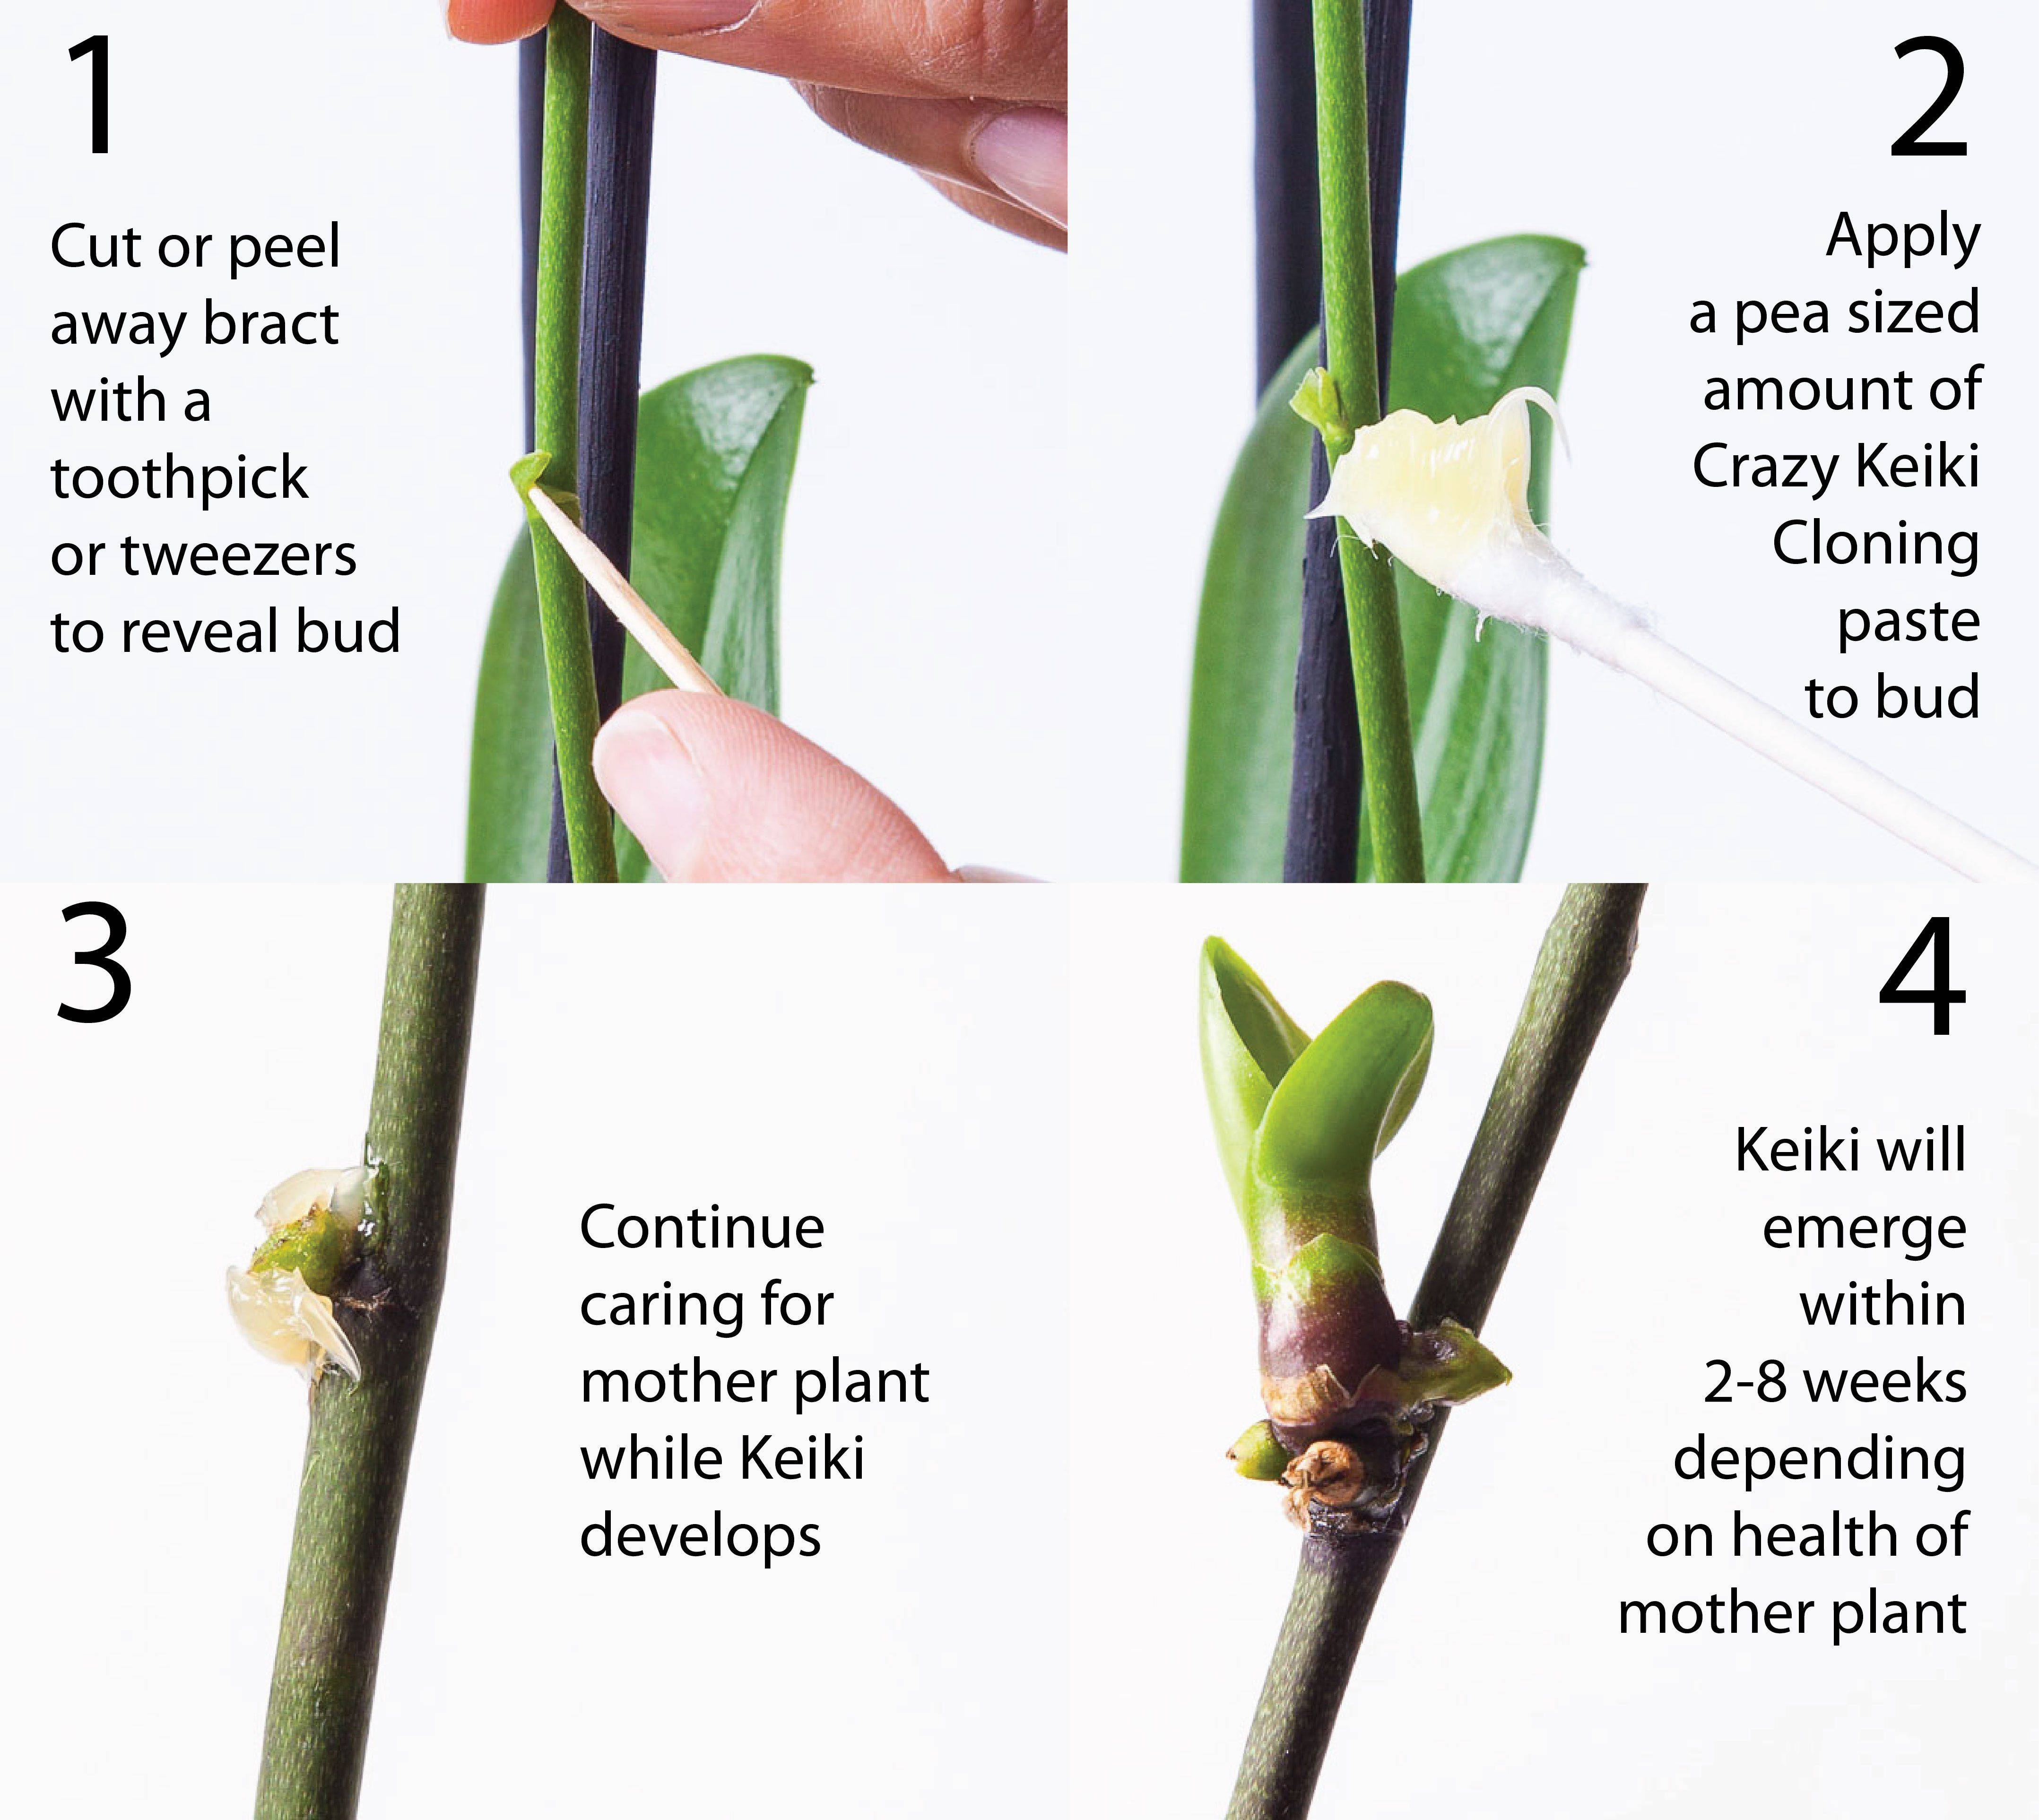 Выращивание орхидей — как размножить орхидею в домашних условиях